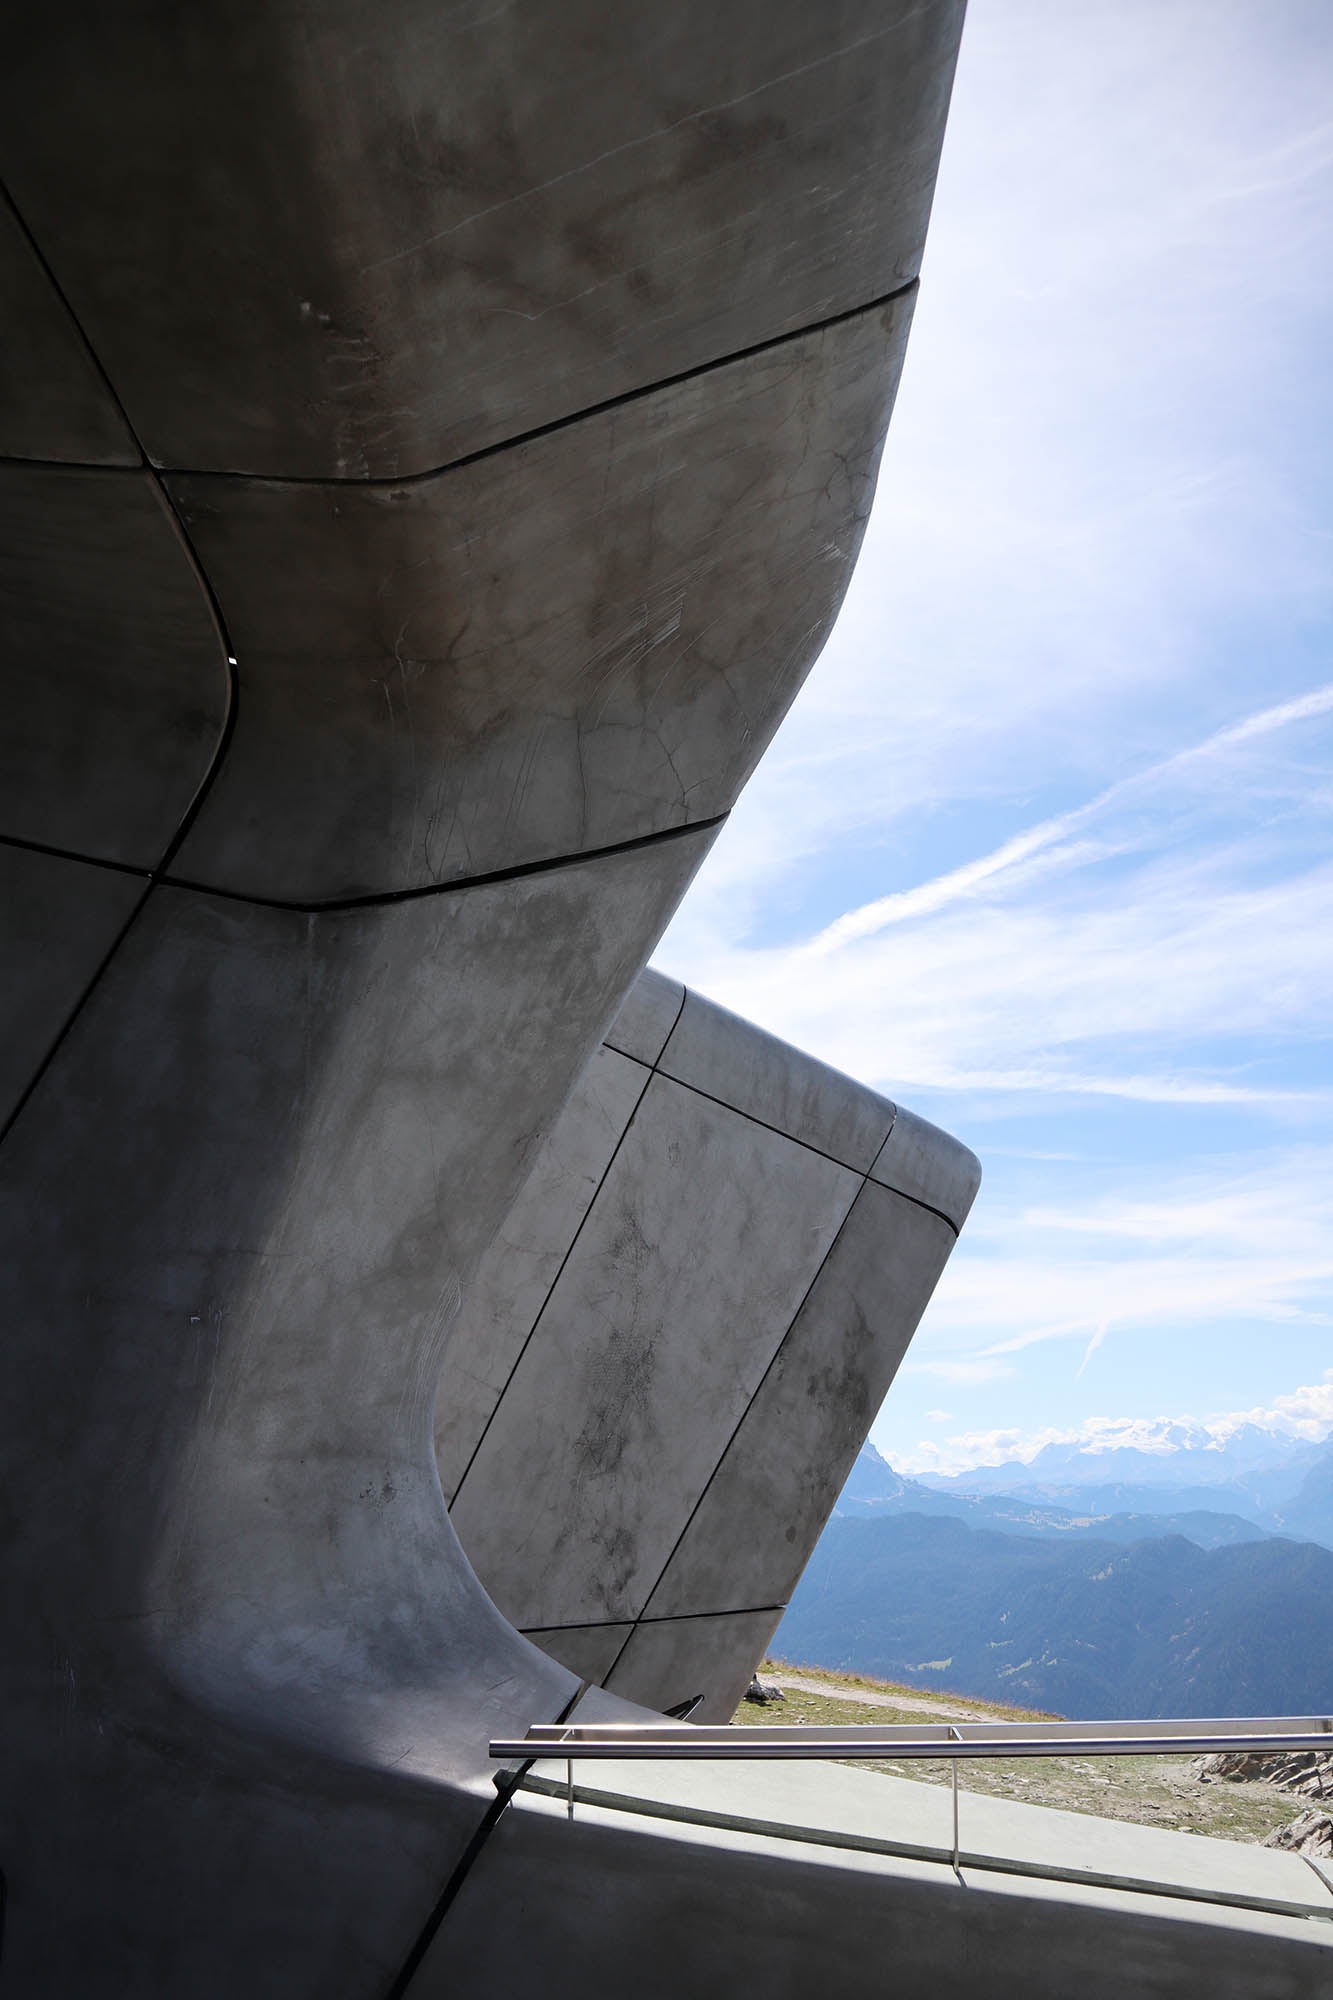 Mit Hymer zur alpinen Baukunst in Südtirol, Teil 1 – Roadtrip zur Gipfelarchitektur [Südtirol]